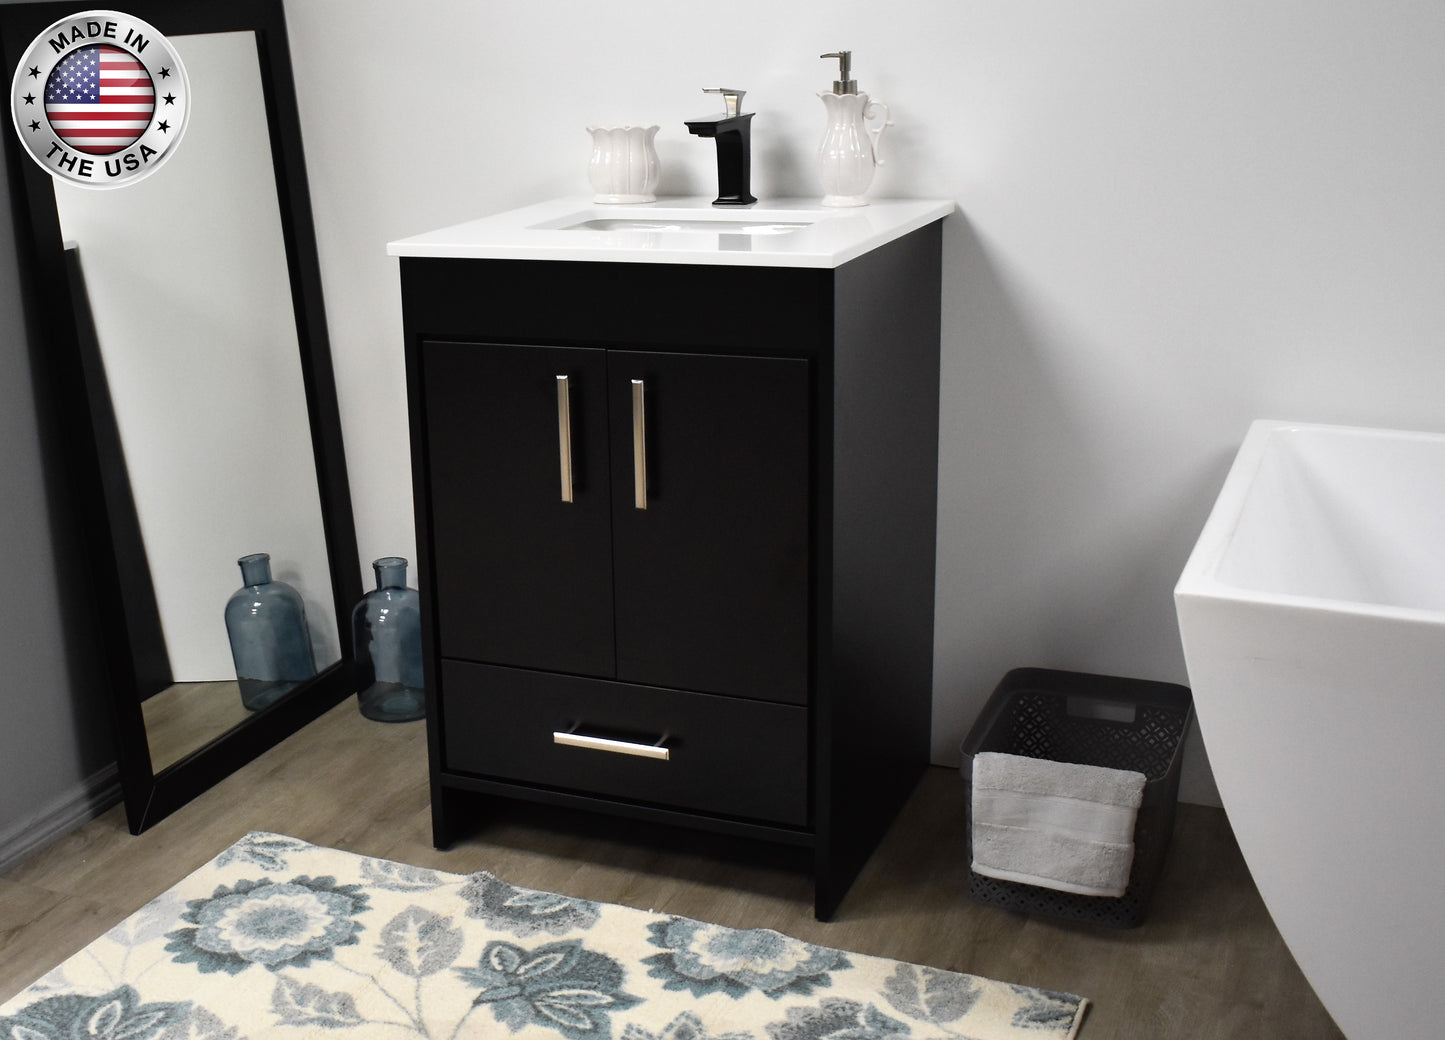 Volpa Capri 24" Modern Bathroom Vanity in Black with White Microstone Top w/ Preinstalled Undermount Sink and Brushed Nickel Edge Handles - Luxe Bathroom Vanities